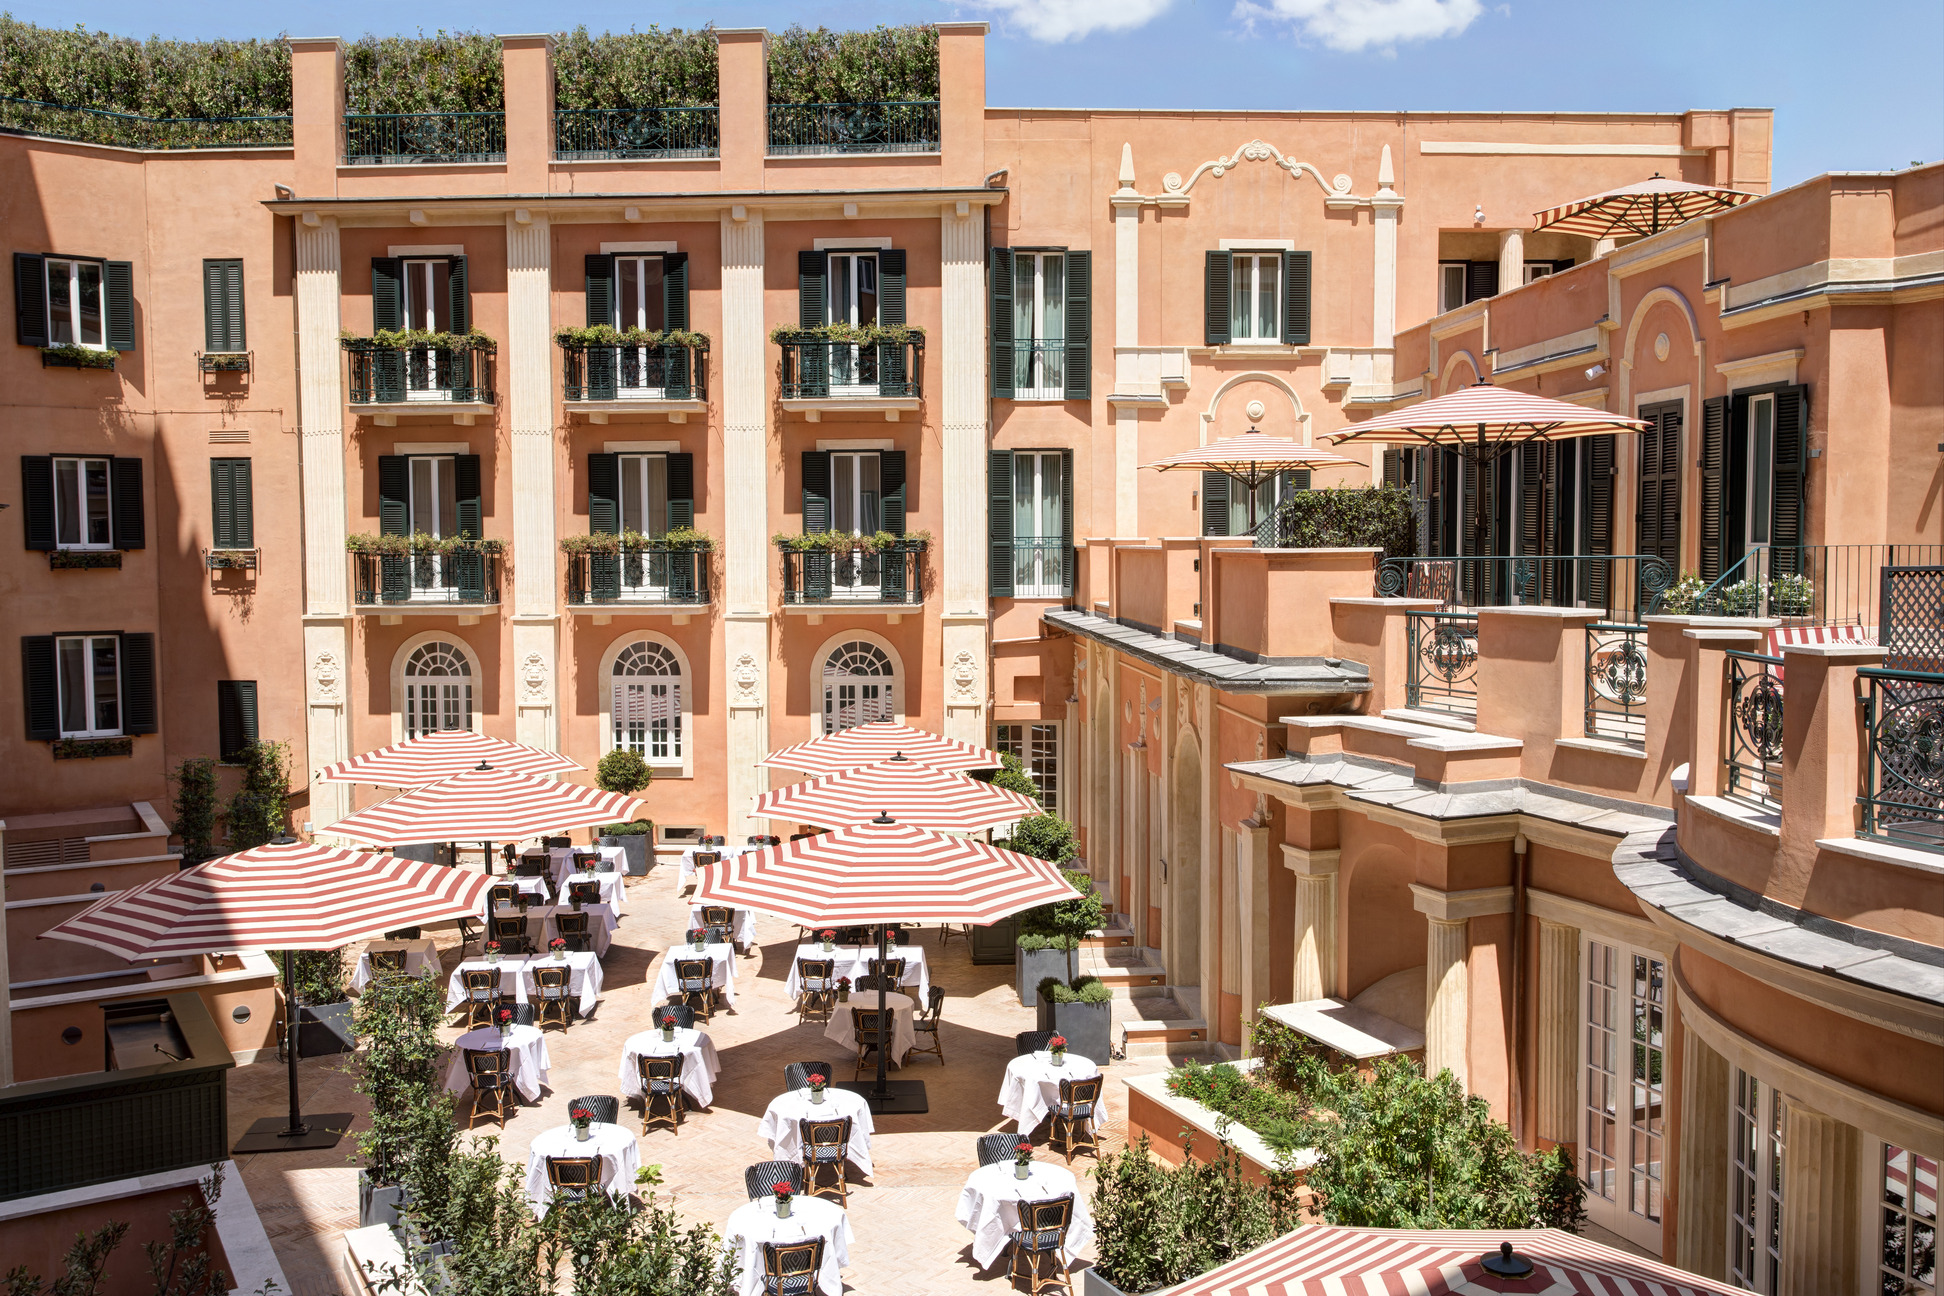 Este elegante hotel italiano está cerca de la Plaza de España de Roma: hoteles encima del bar